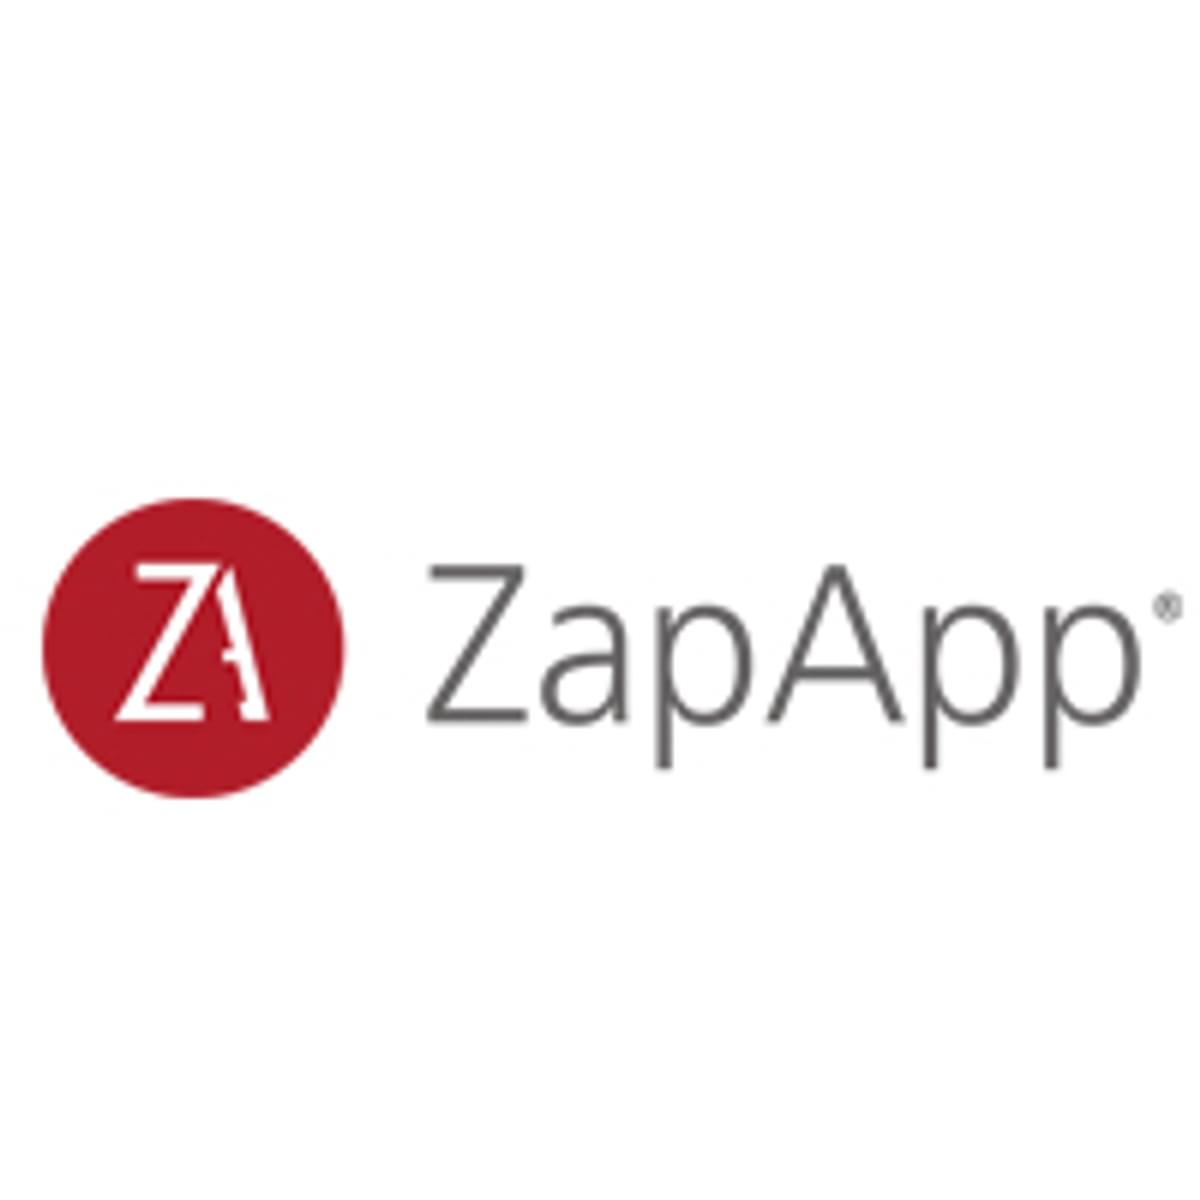 Zapapp Secure Workspace gepresenteerd op Copaco Event image